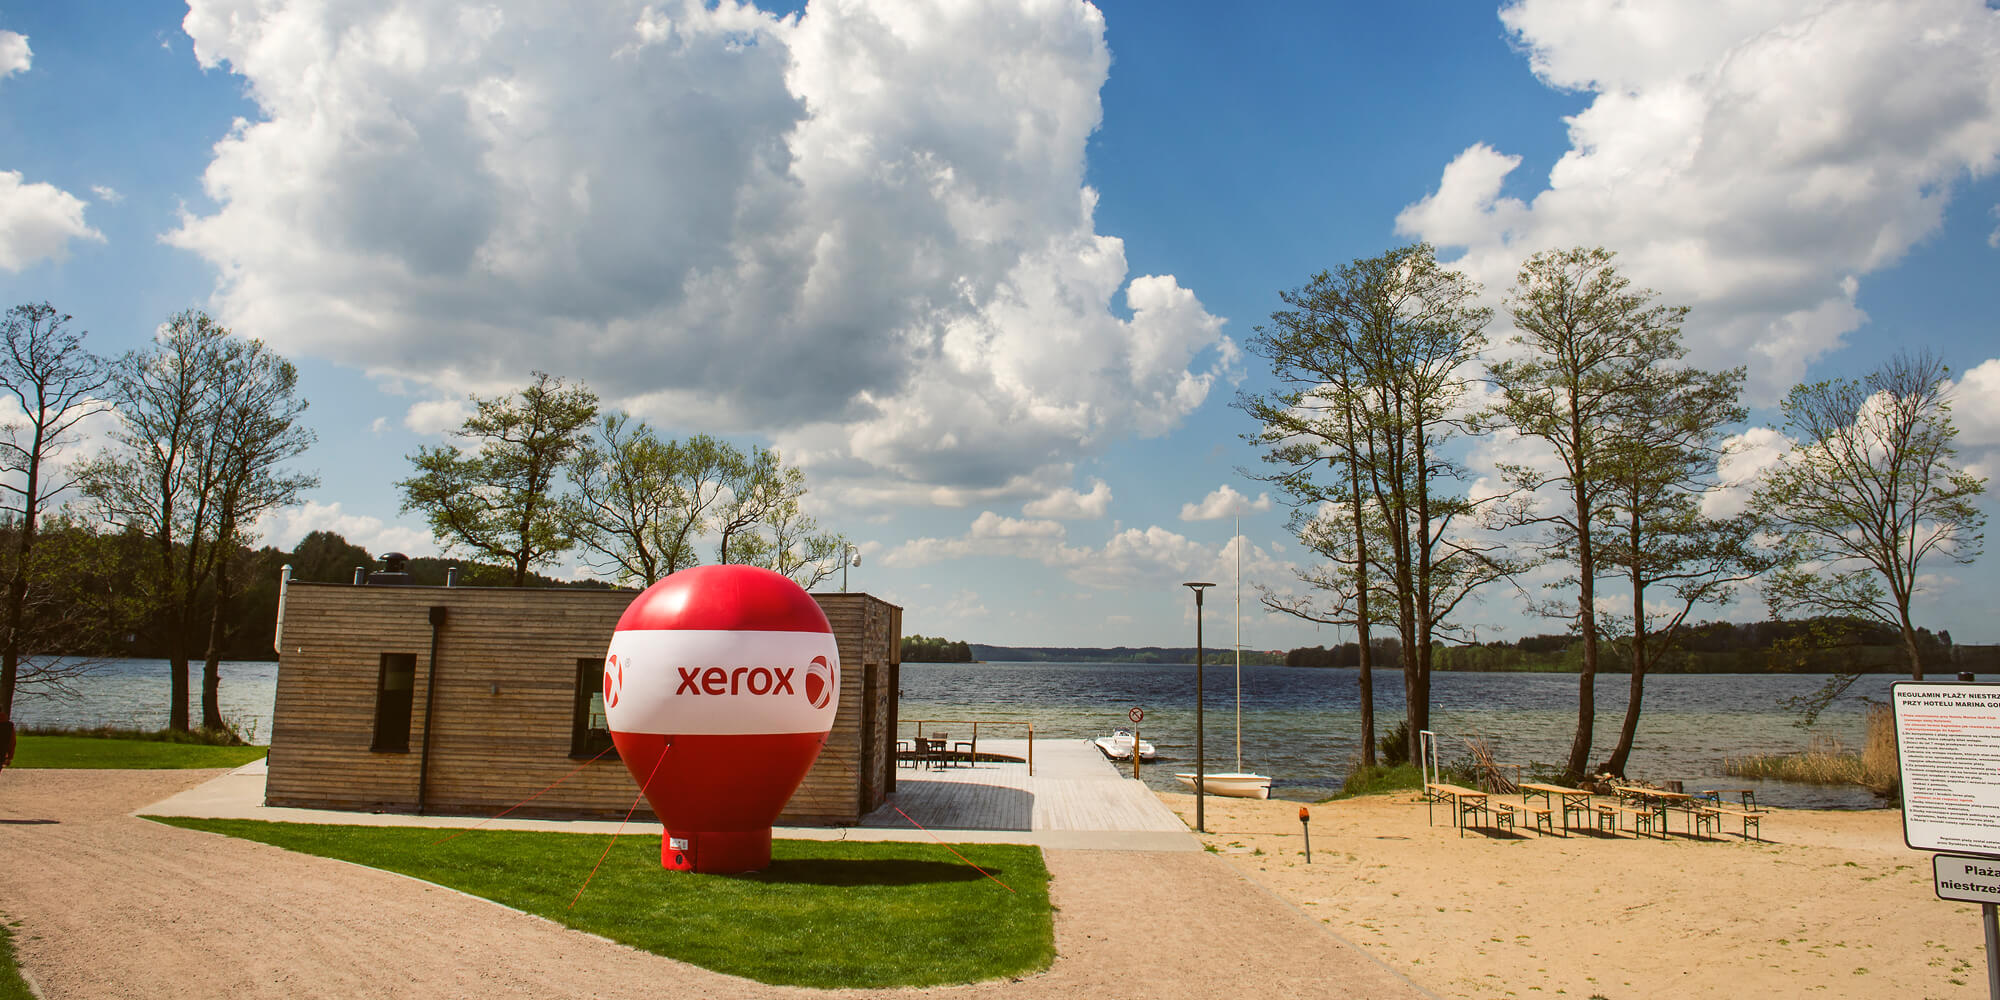 Balo reklamowy z brandingiem Xerox stoi nad jeziorem